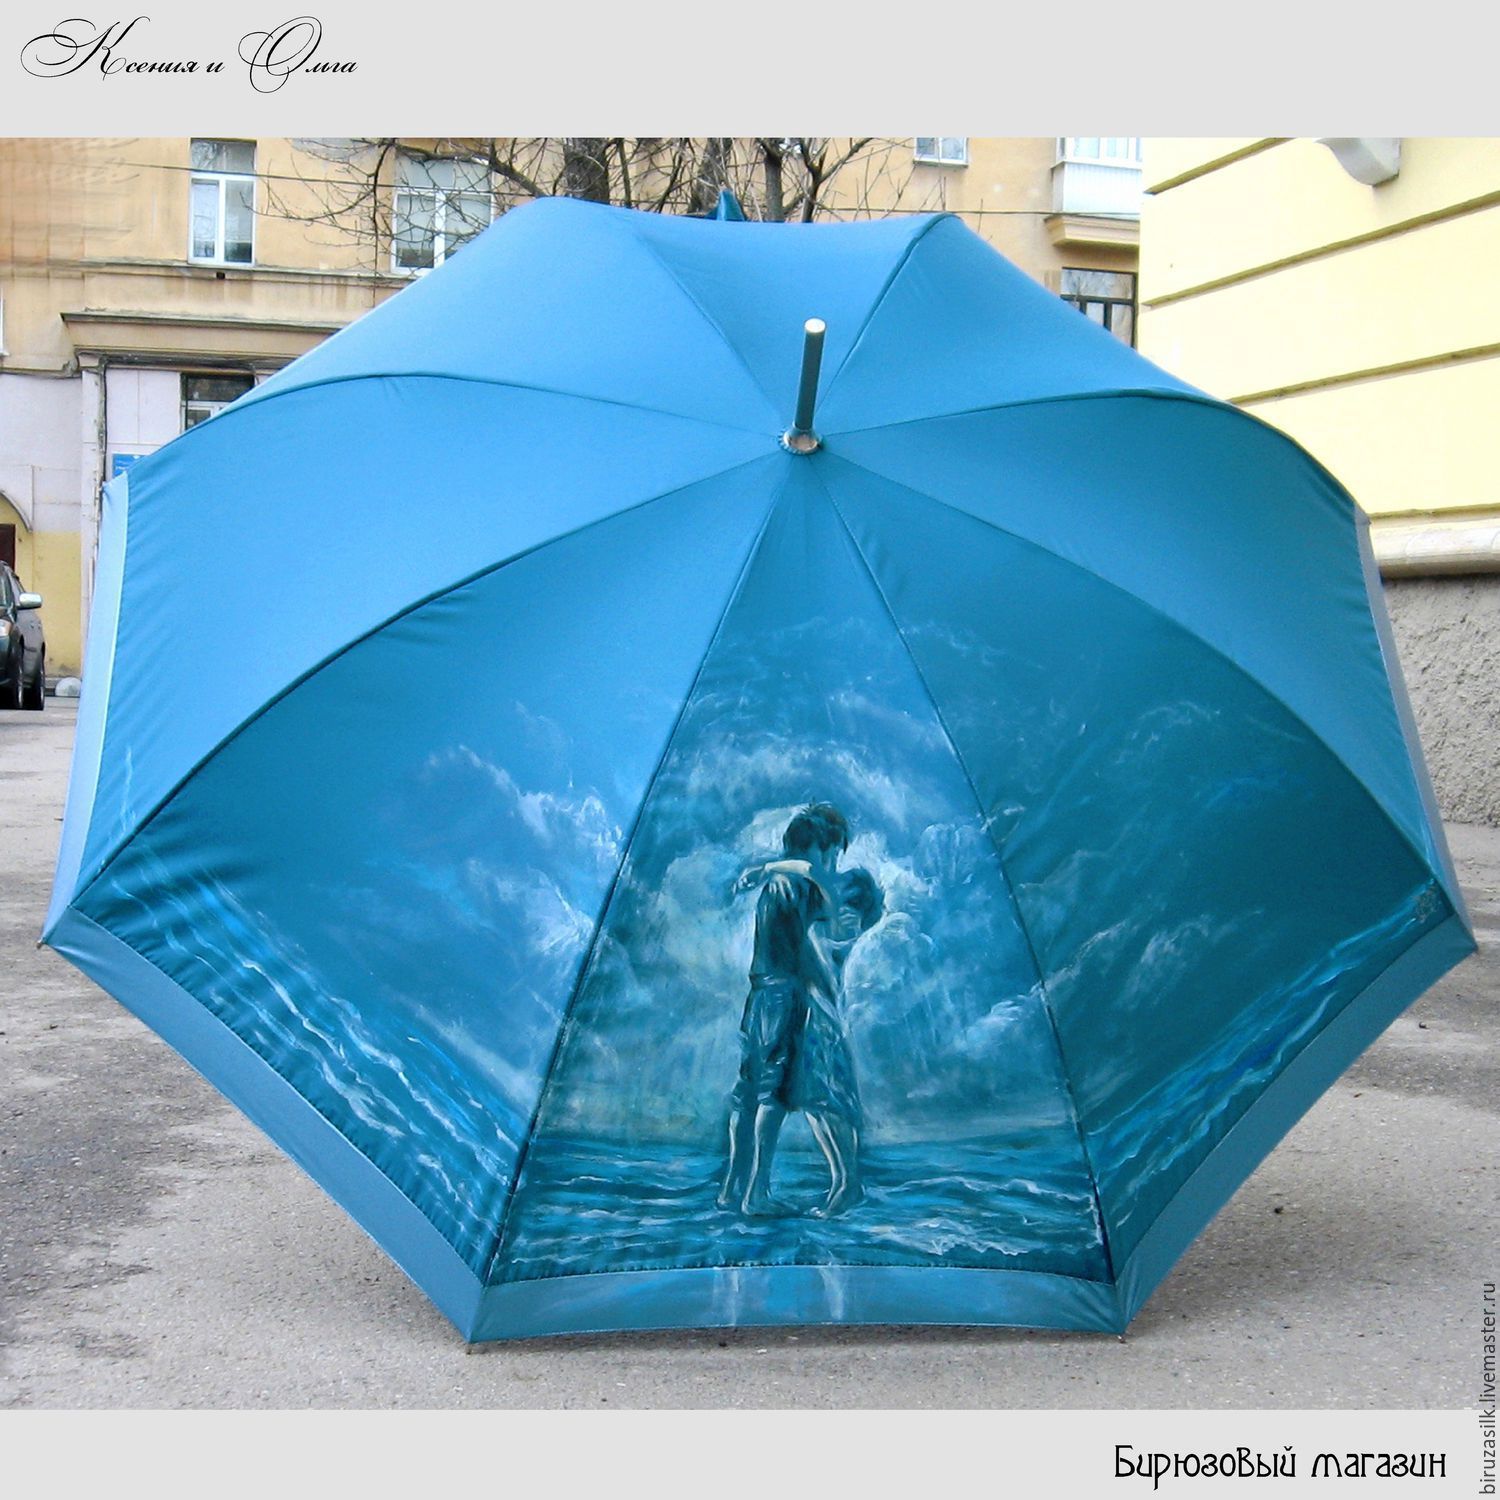 Мастер зонтиков. Зонт бирюзовый. Роспись зонта. Зонт с росписью бирюзовый. Зонт с ручной росписью.